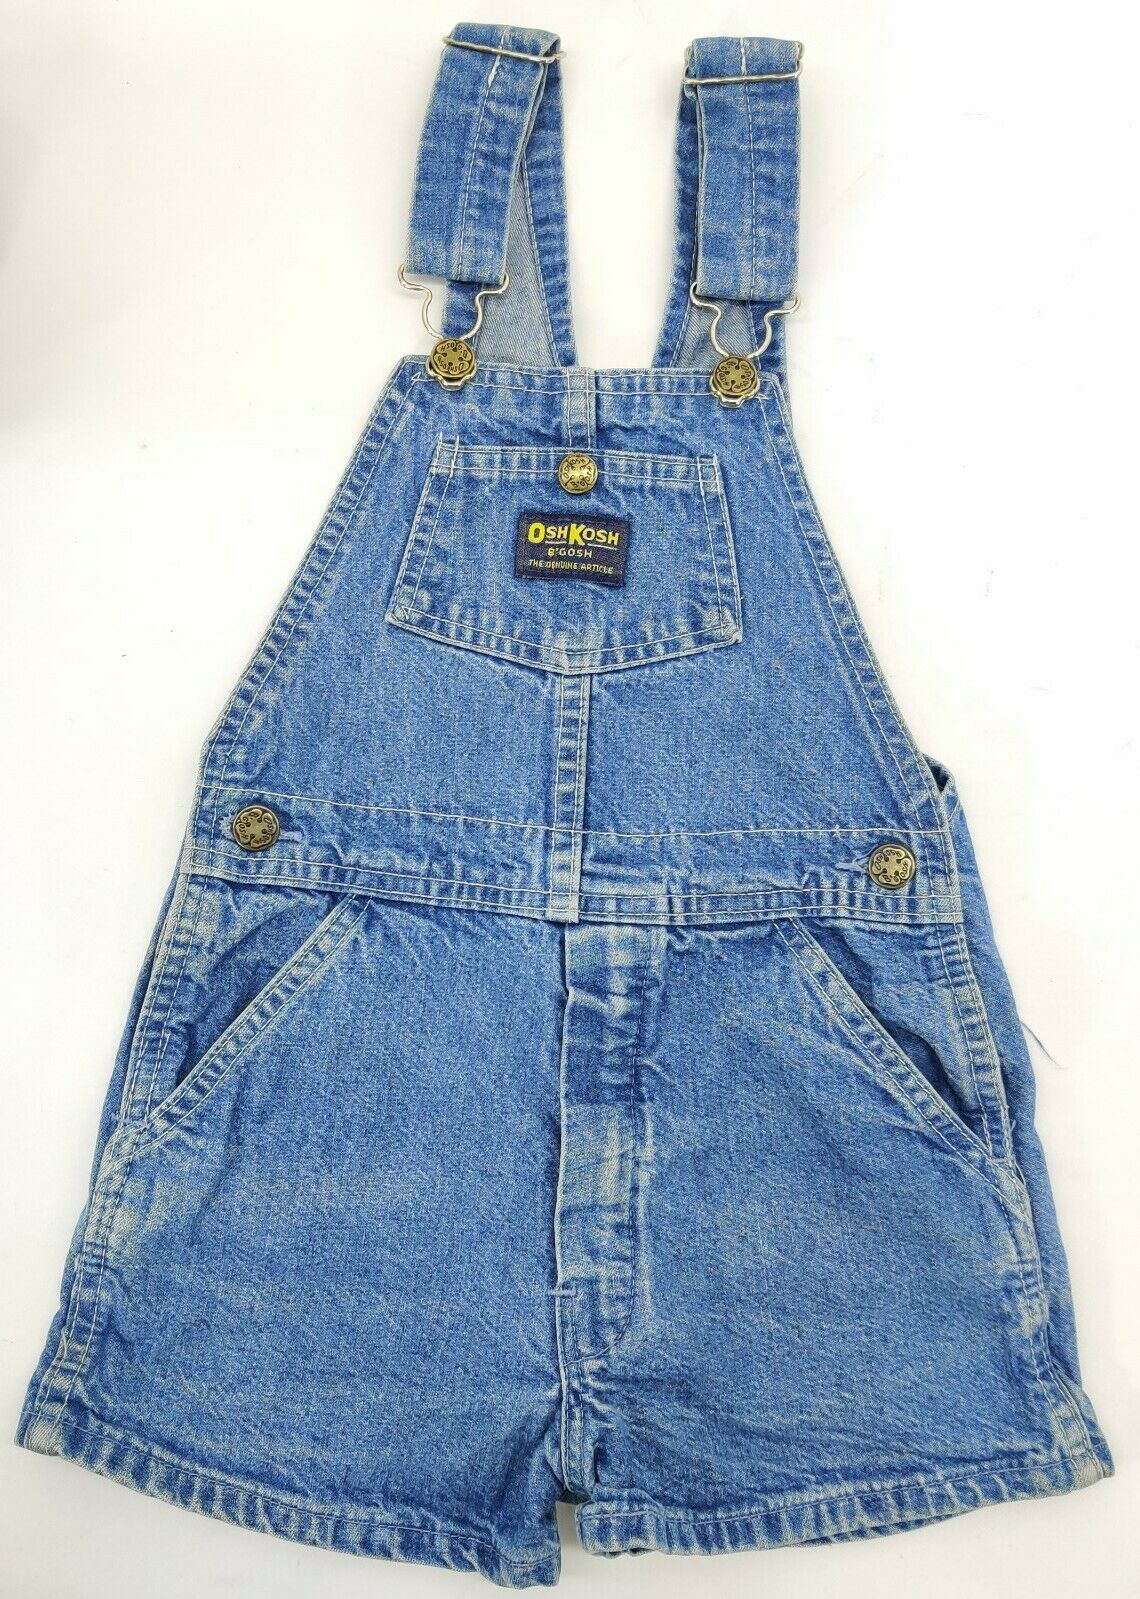 Oshkosh Bgosh Blue Denim Overalls Shorts Kid Size 7 Vintage Faded Bottom Vestbak